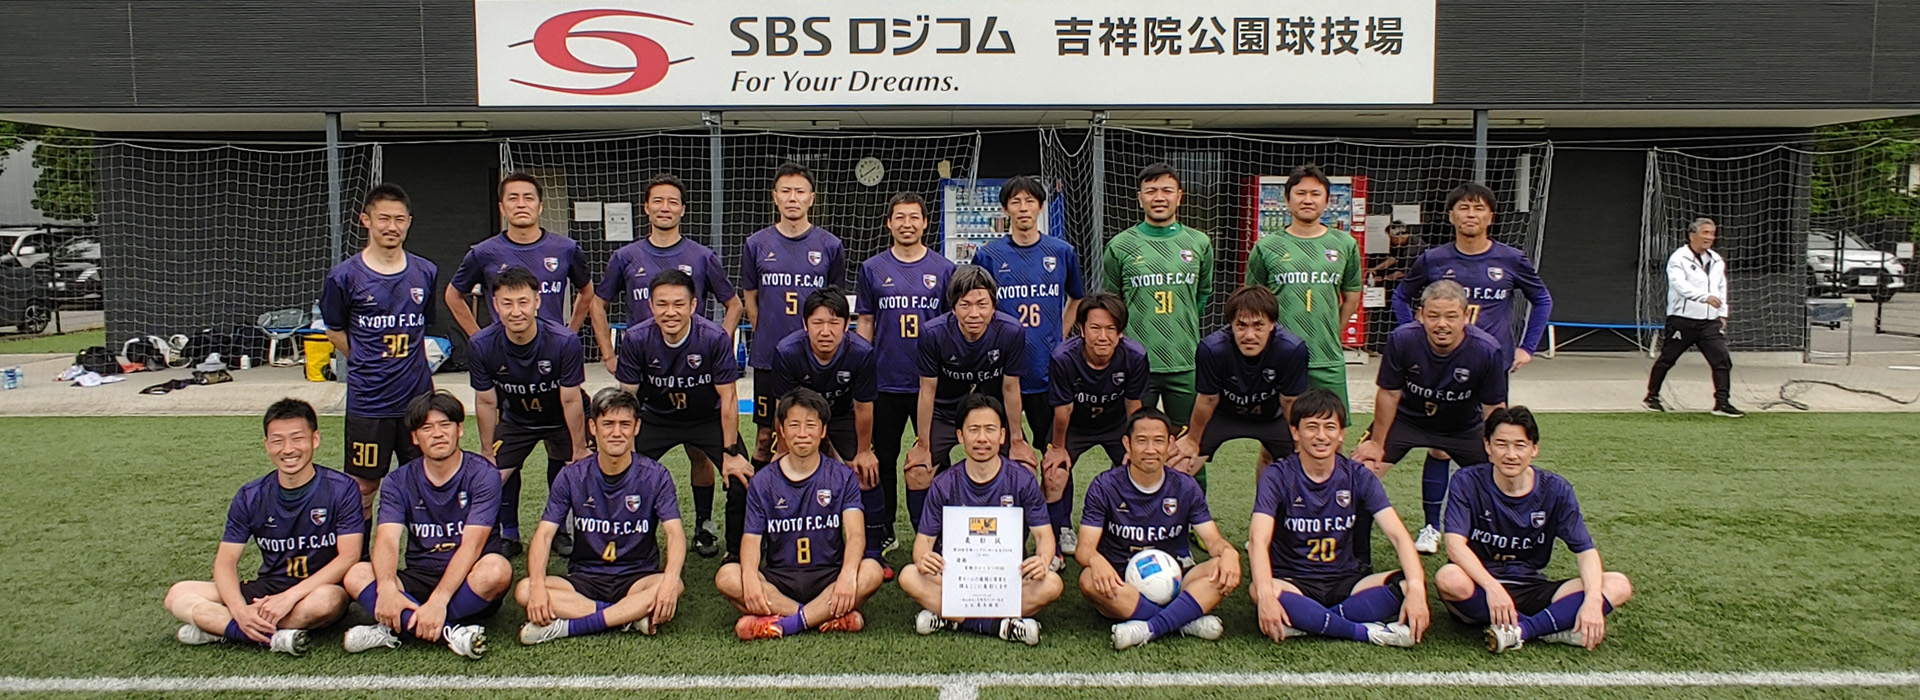 京都フットボール連盟 official site